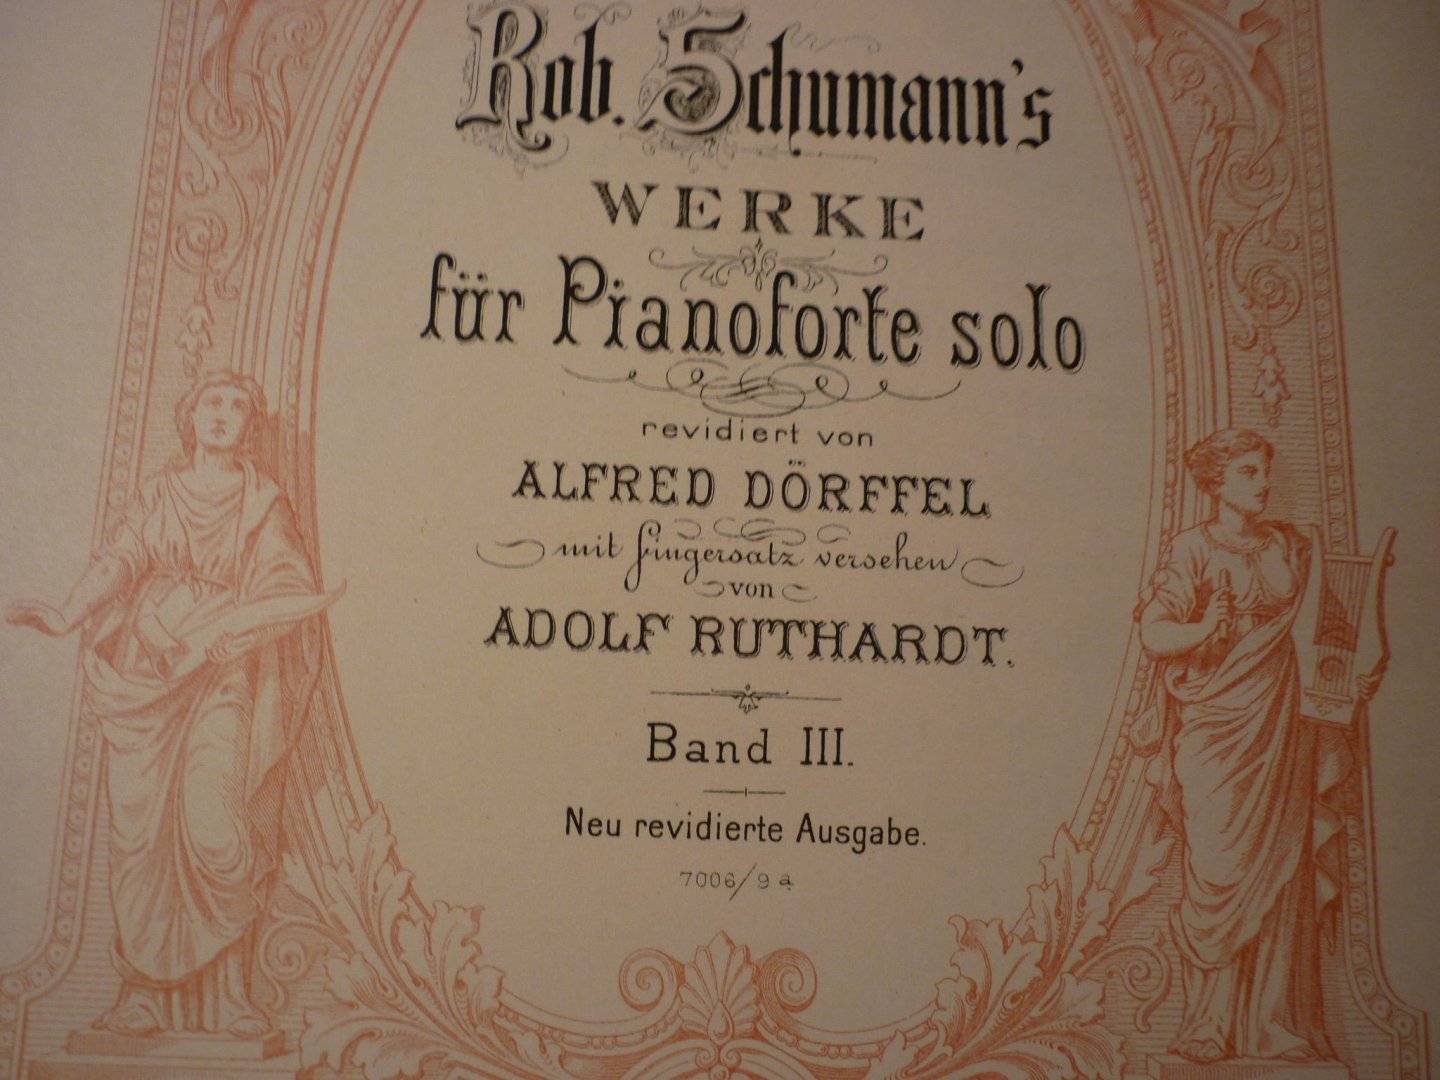 Schumann; Robert (1810-1856) - WERKE fur Pianoforte solo - Band III; revidiert von Alfred Dorffel; mit fingersatz von Adolf Ruthardt